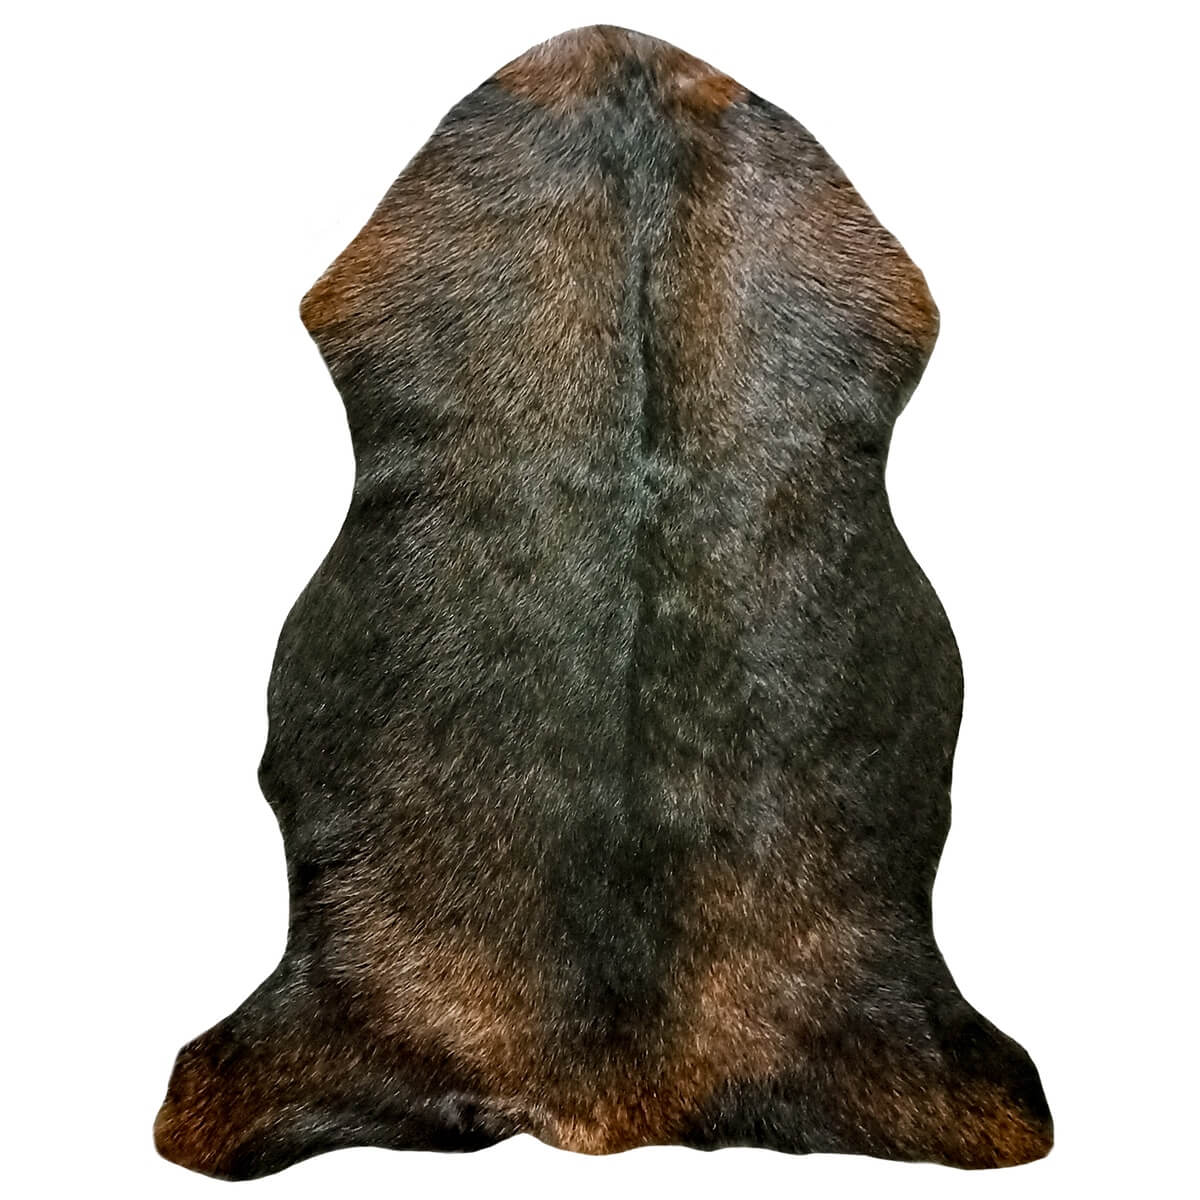 covor din piele de capra naturala 60x90 culoare neagra cu mici pete maro